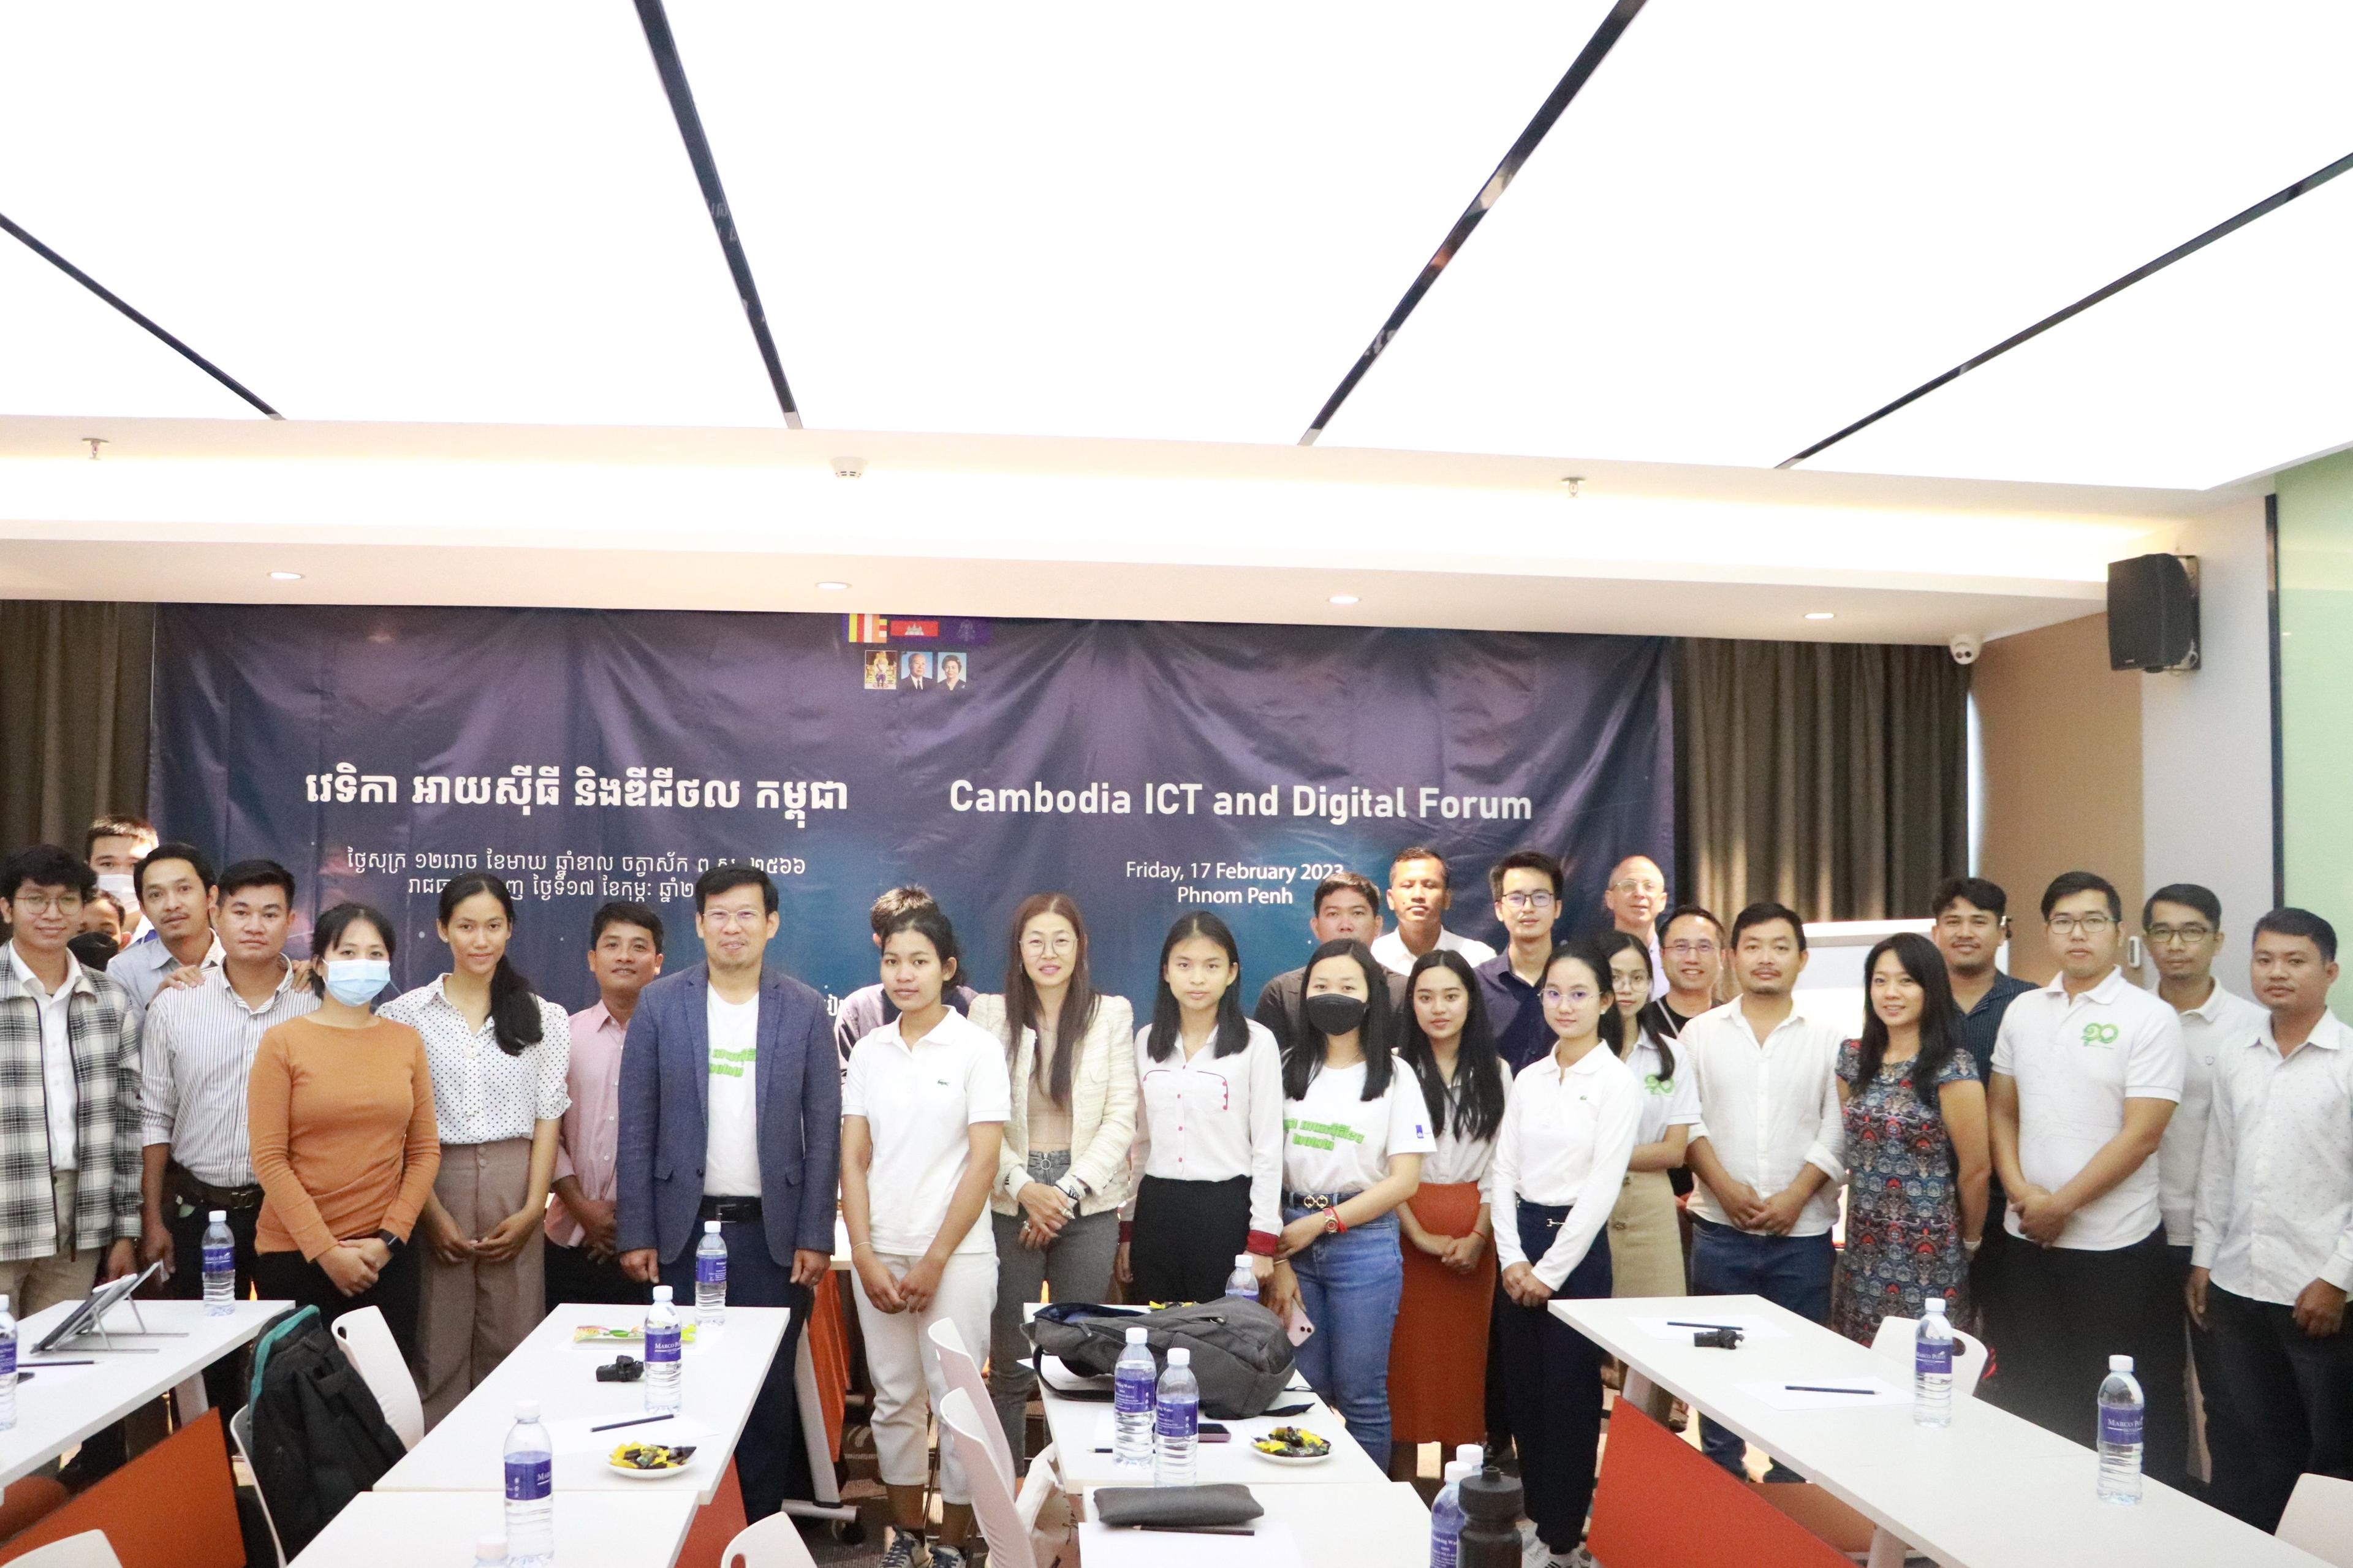 The Third Cambodia ICT and Digital Forum